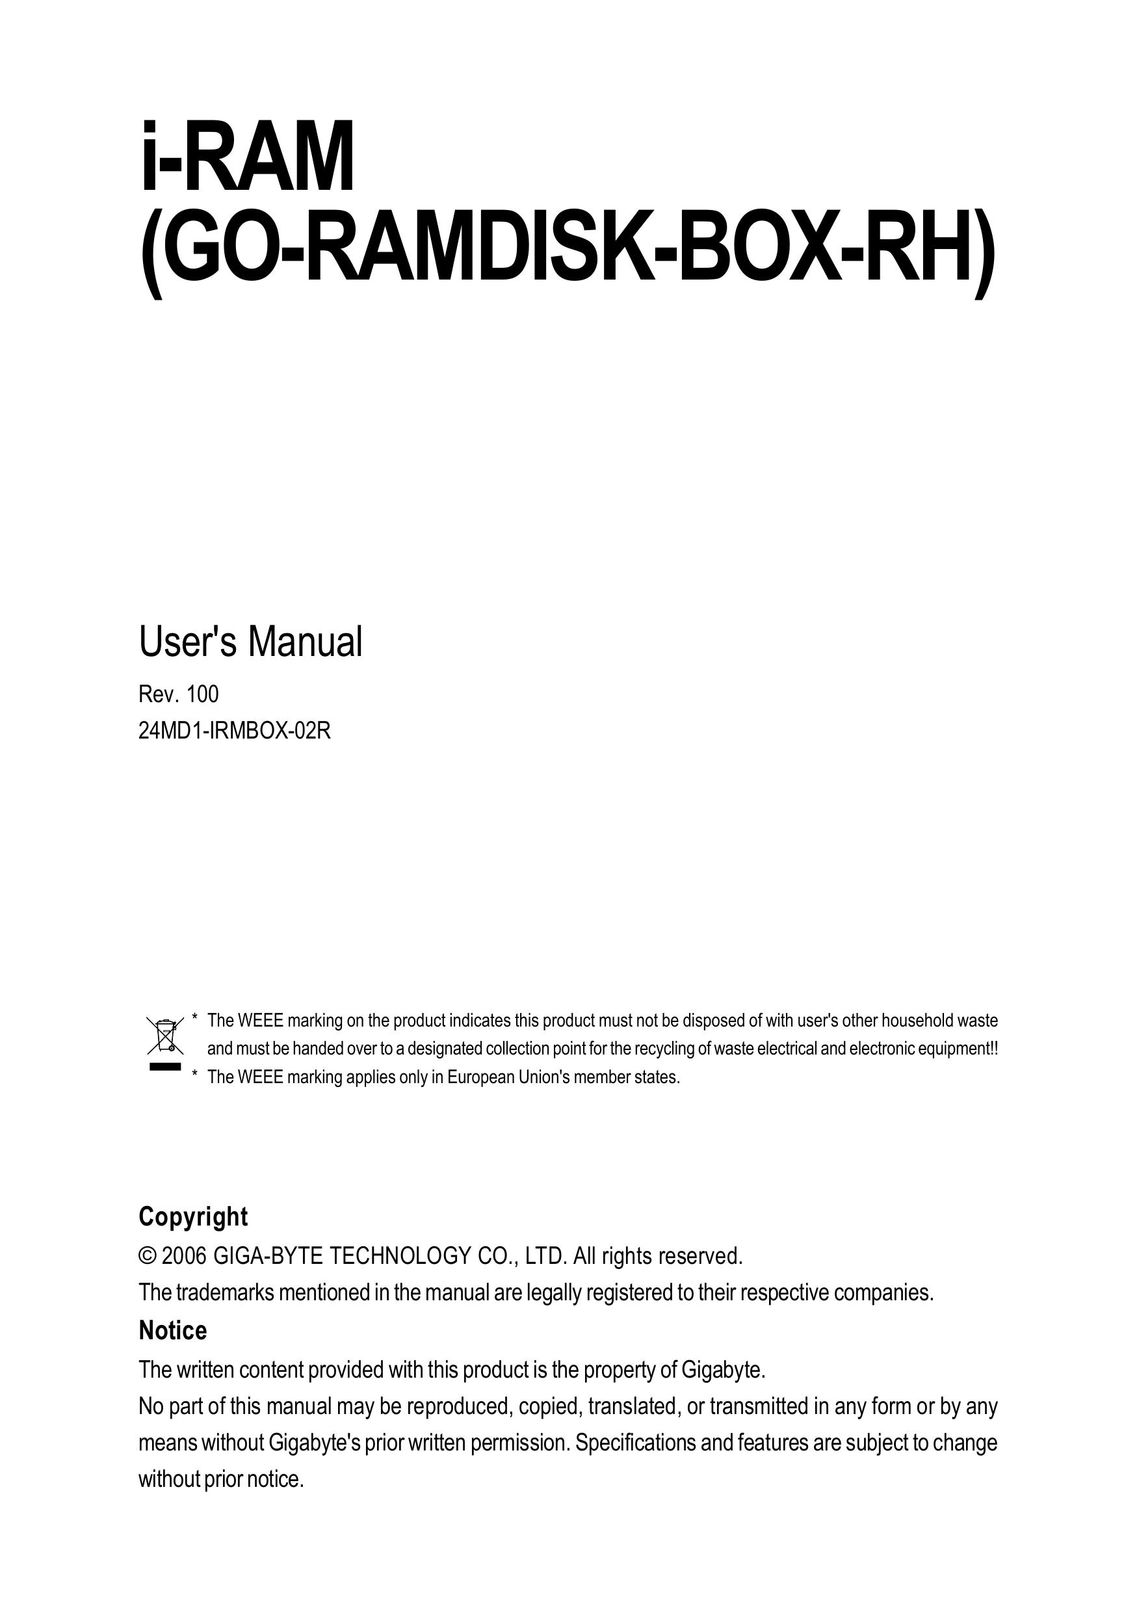 Gigabyte GO-RAMDISK-BOX-RH Computer Hardware User Manual